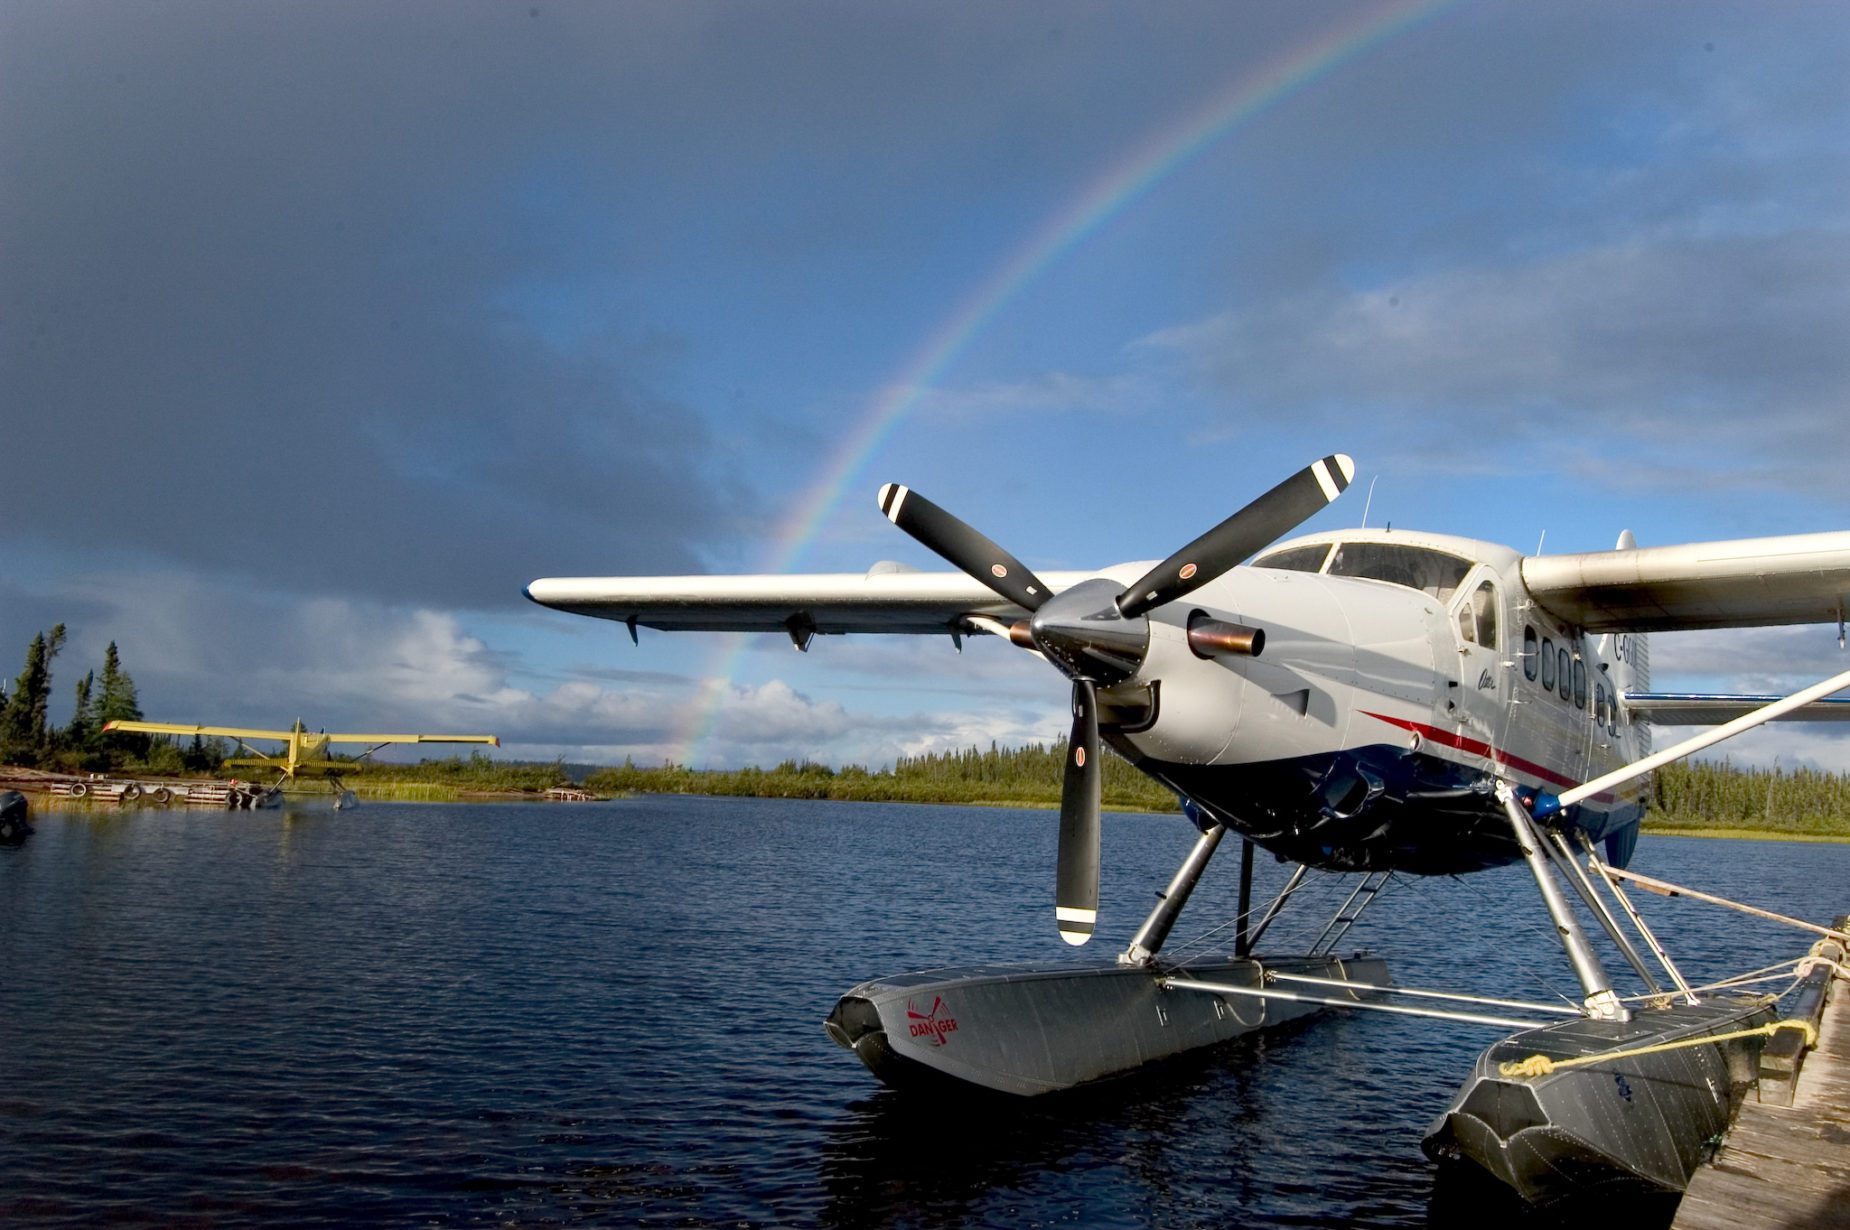 Gangler's floatplane in water with rainbow